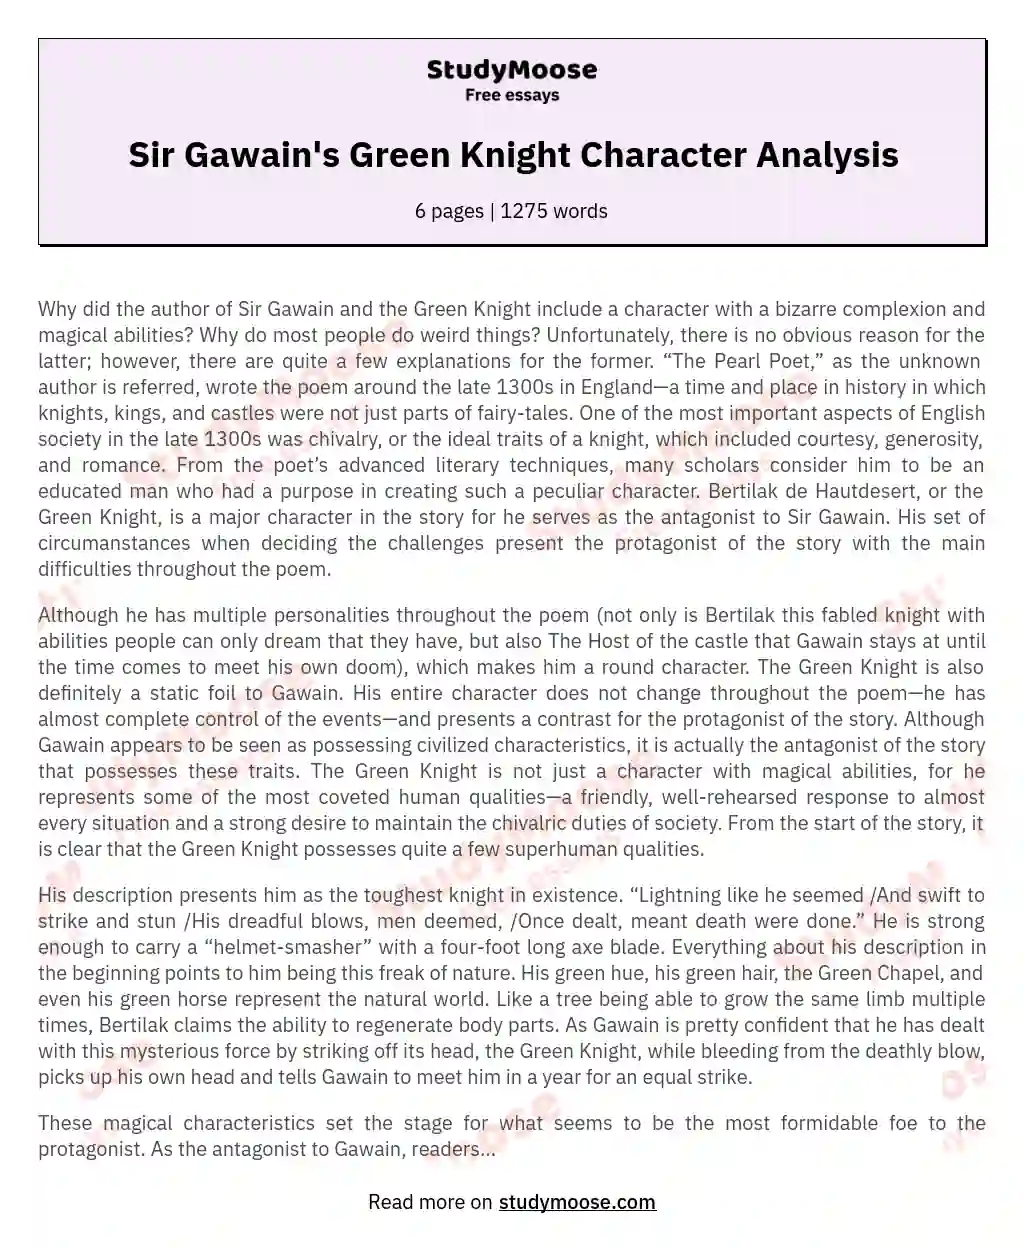 Sir Gawain's Green Knight Character Analysis